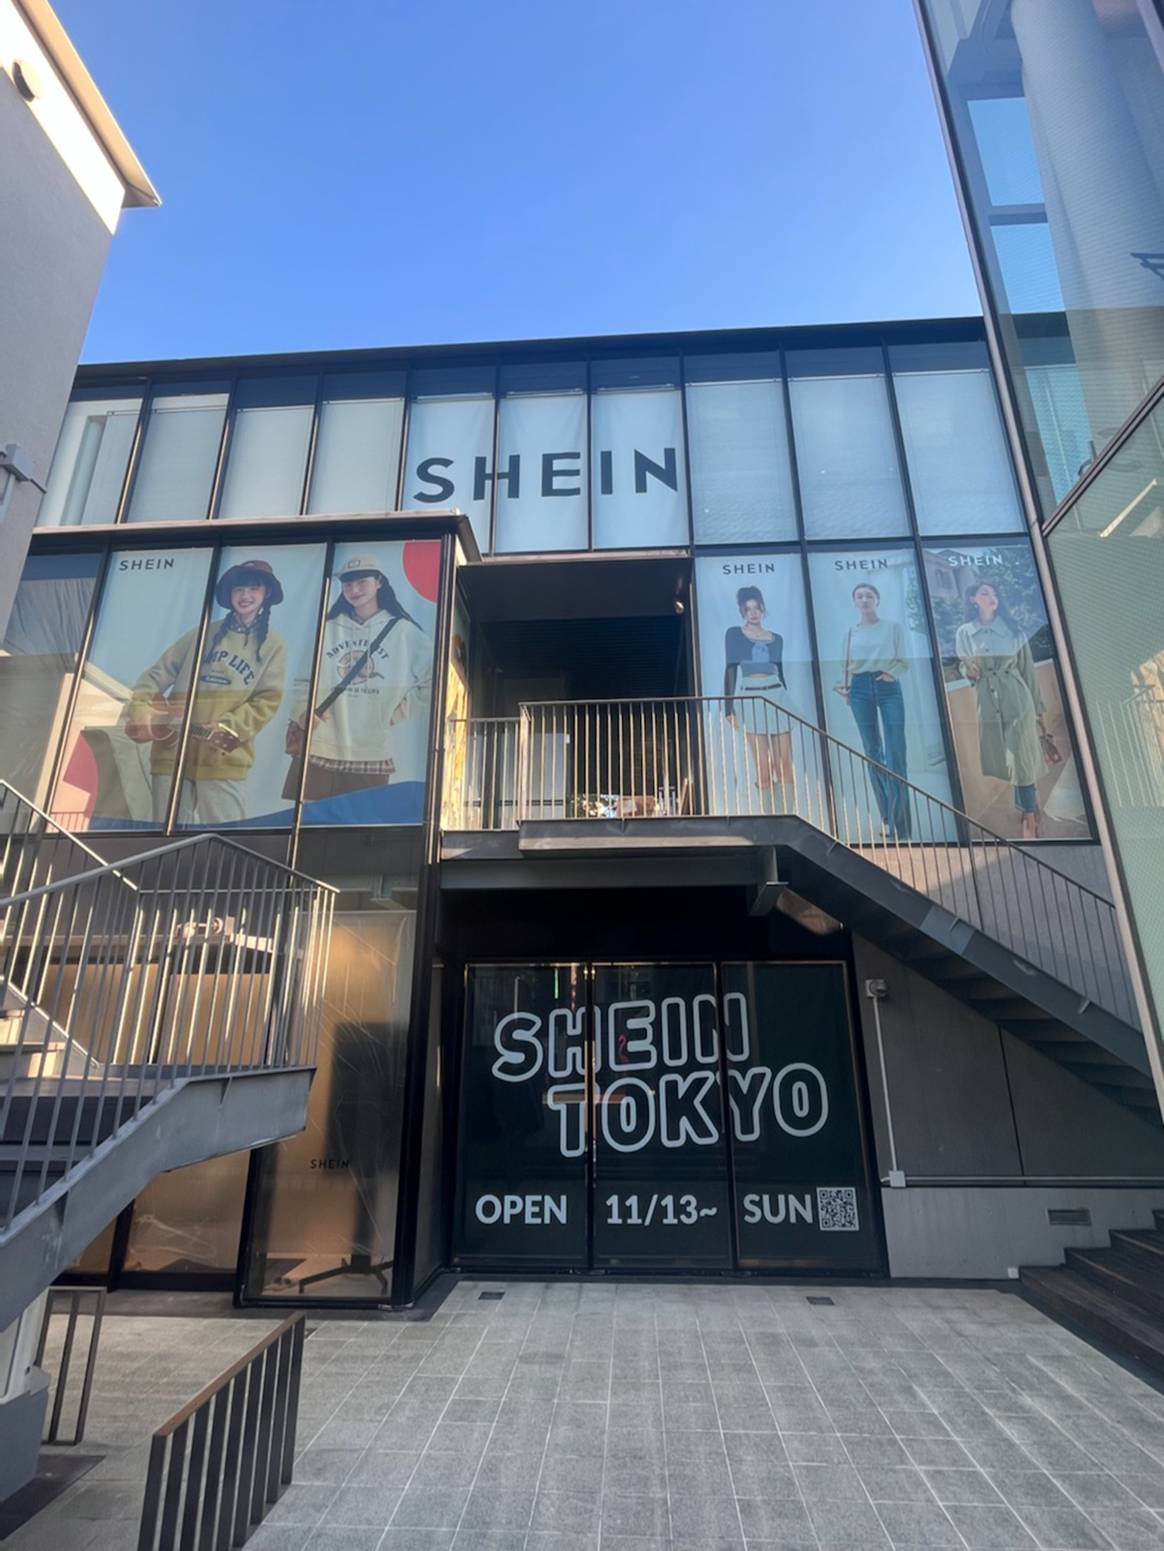 Photo Credits: Exterior del espacio escogido por Shein en Cat Street para albergar su próxima pop-up en Tokio. Fotografía de cortesía.